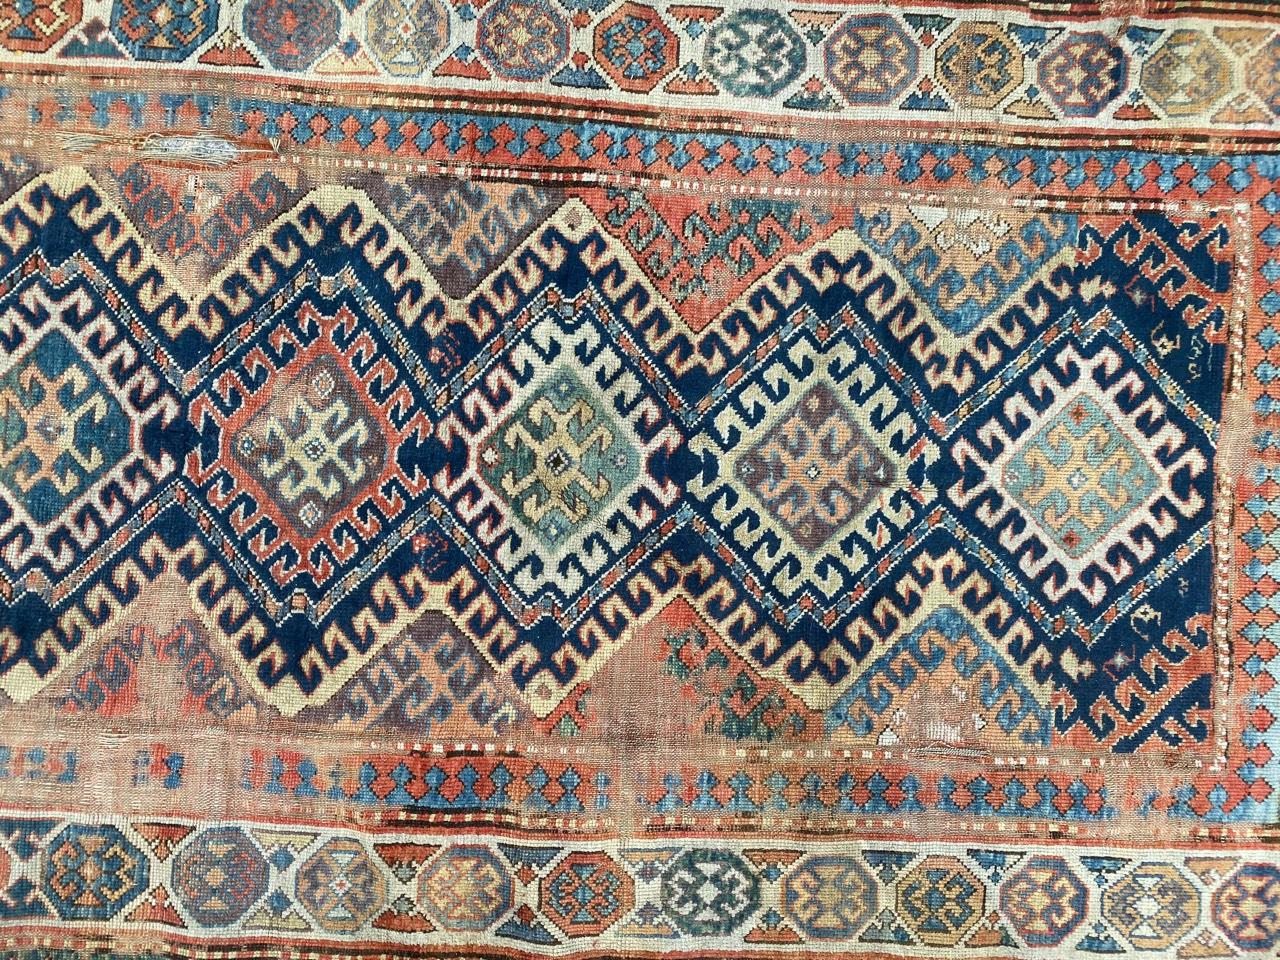 Entdecken Sie die zeitlose Eleganz unseres Kazak-Teppichs aus der Mitte des 19. Jahrhunderts. Mit einem fesselnden geometrischen Design und einer Palette exquisiter natürlicher Farben, darunter Blau, Rot, Grün, Gelb und Violett, verziert. Dieses